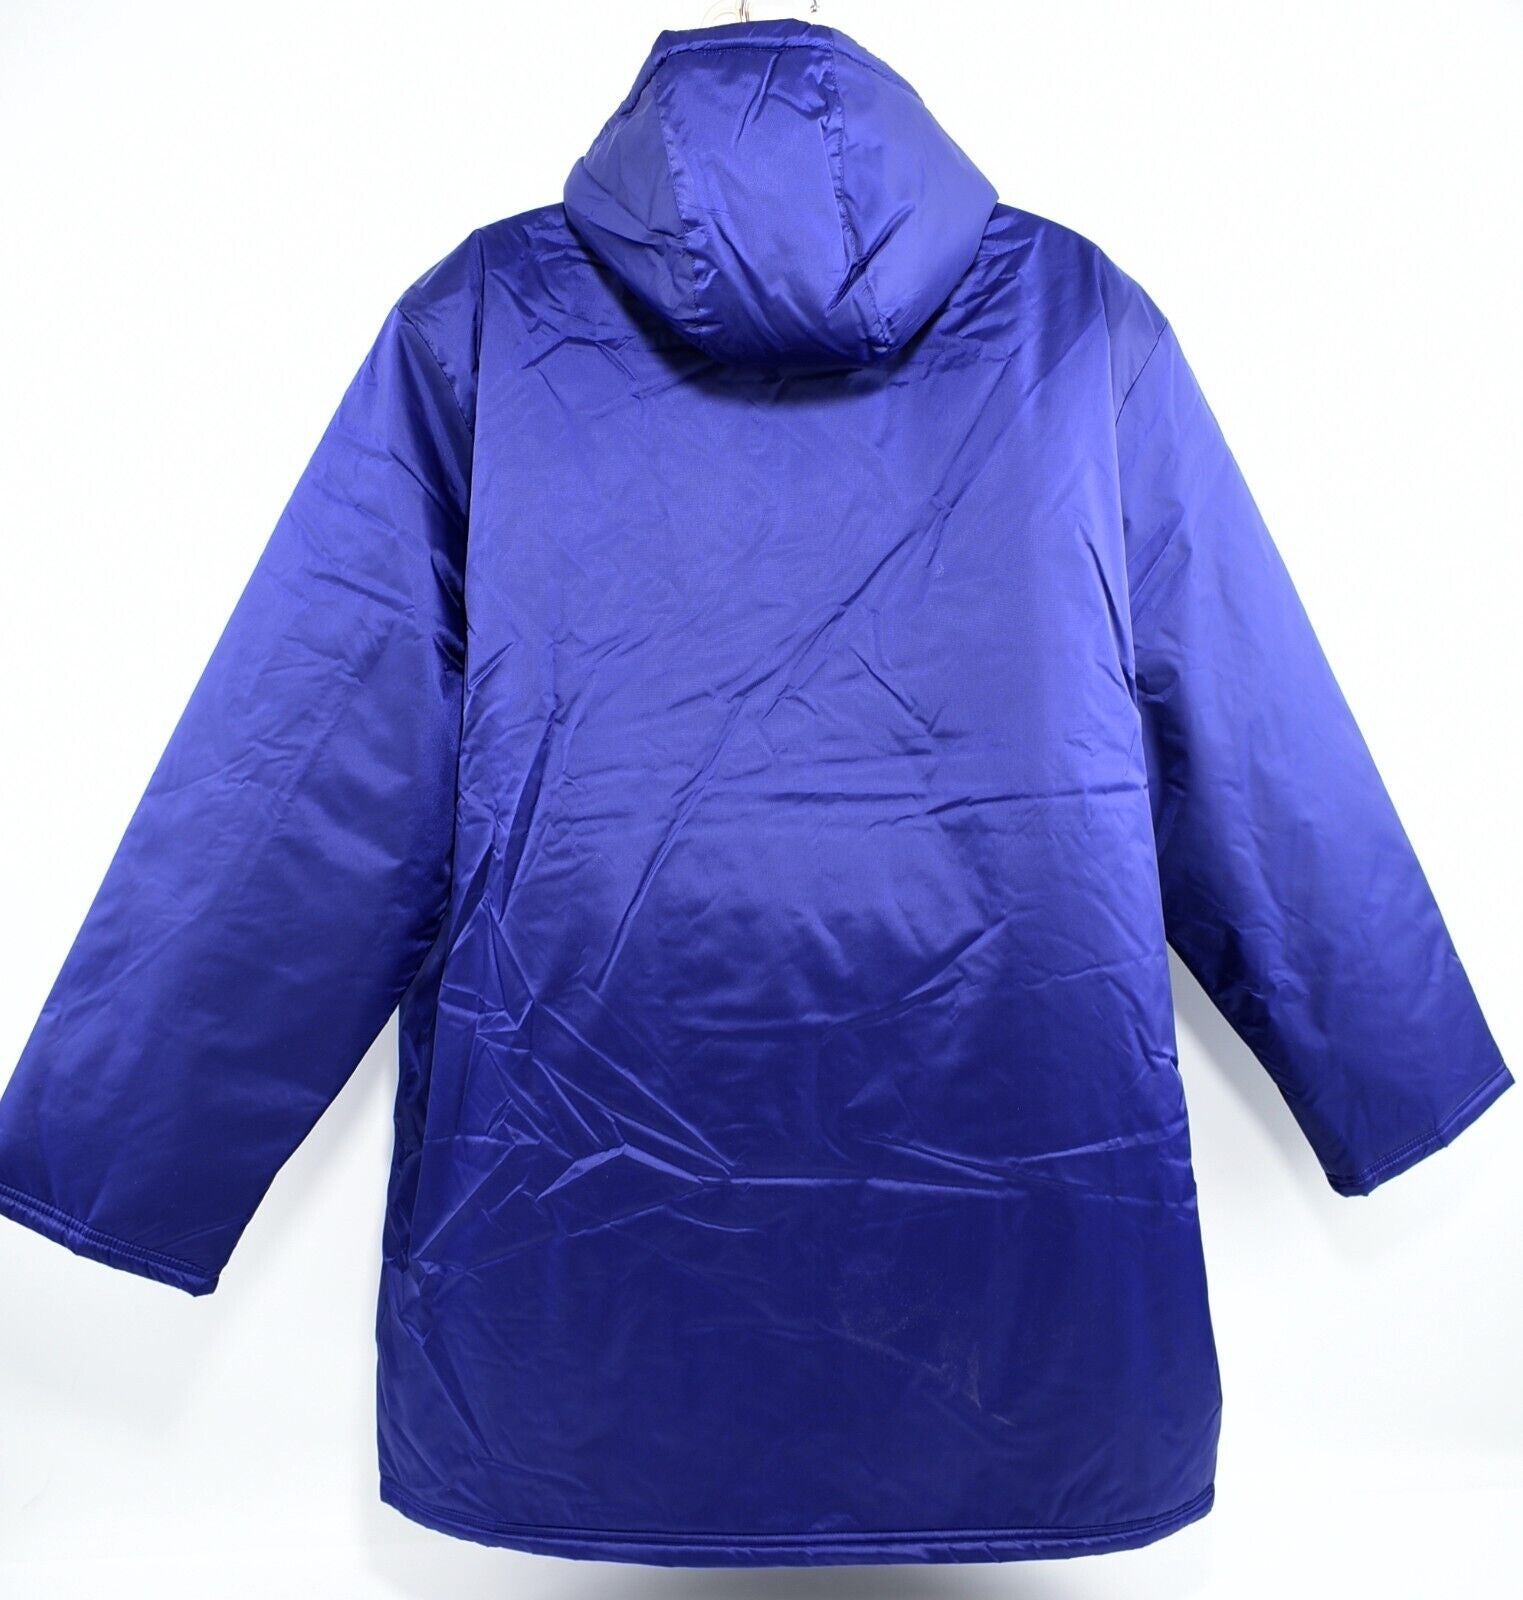 ADIDAS Men's Core 18 Stadium Jacket, Warm Padded Coat, Blue, size XL